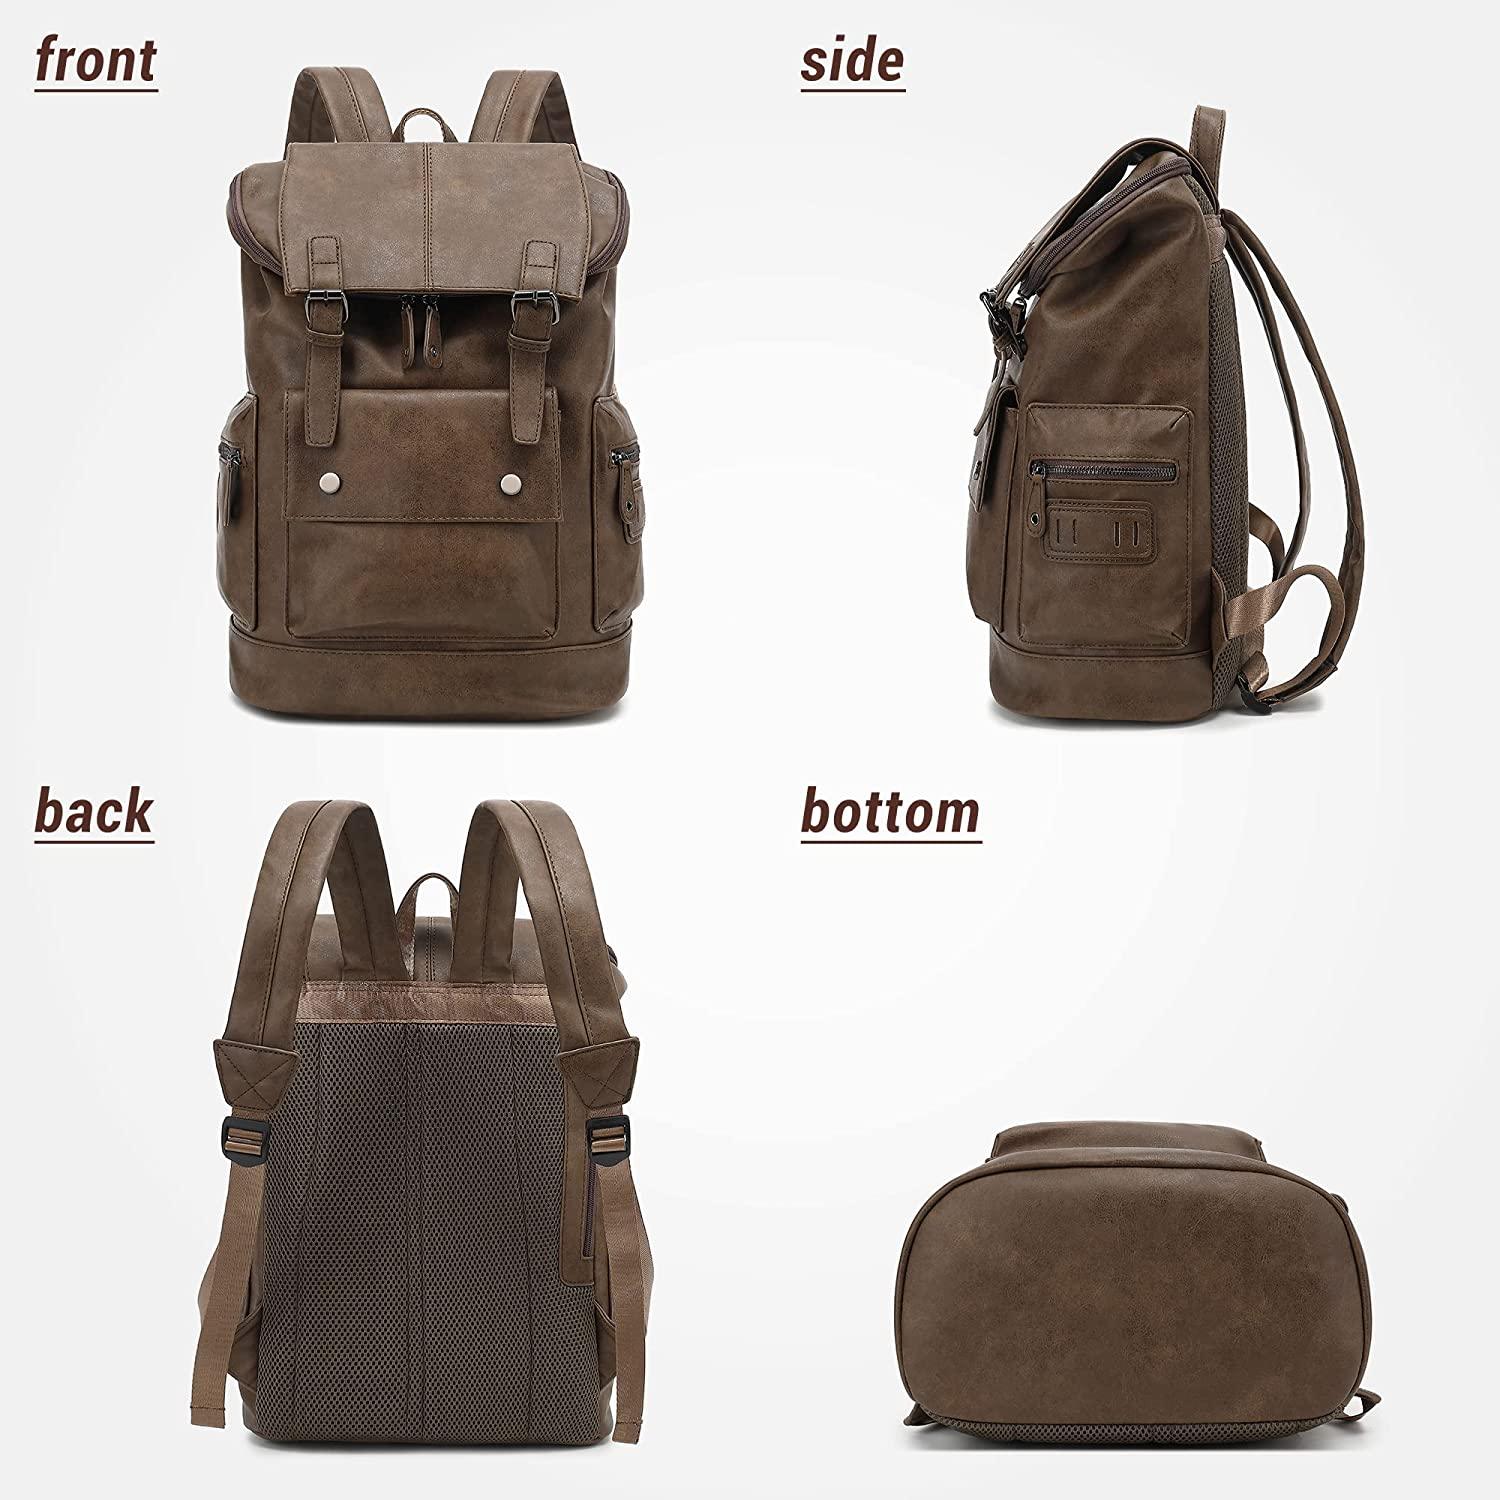 FR Fashion Co. 18" Men's Vintage Leather Backpack - FR Fashion Co. 